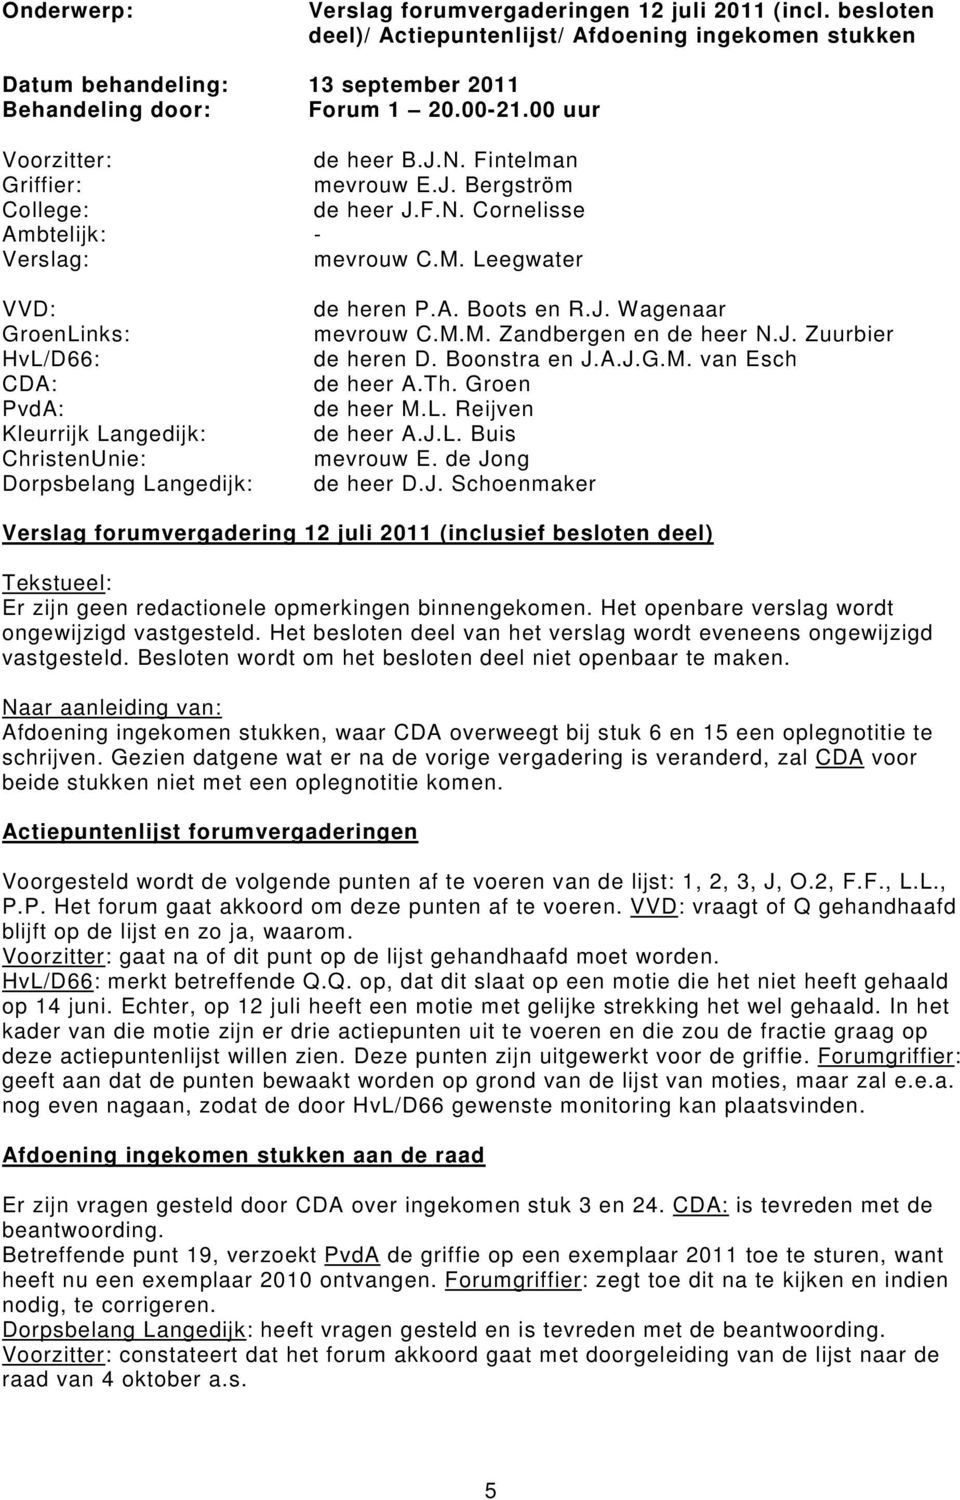 Leegwater VVD: GroenLinks: HvL/D66: CDA: PvdA: Kleurrijk Langedijk: ChristenUnie: Dorpsbelang Langedijk: de heren P.A. Boots en R.J. Wagenaar mevrouw C.M.M. Zandbergen en de heer N.J. Zuurbier de heren D.